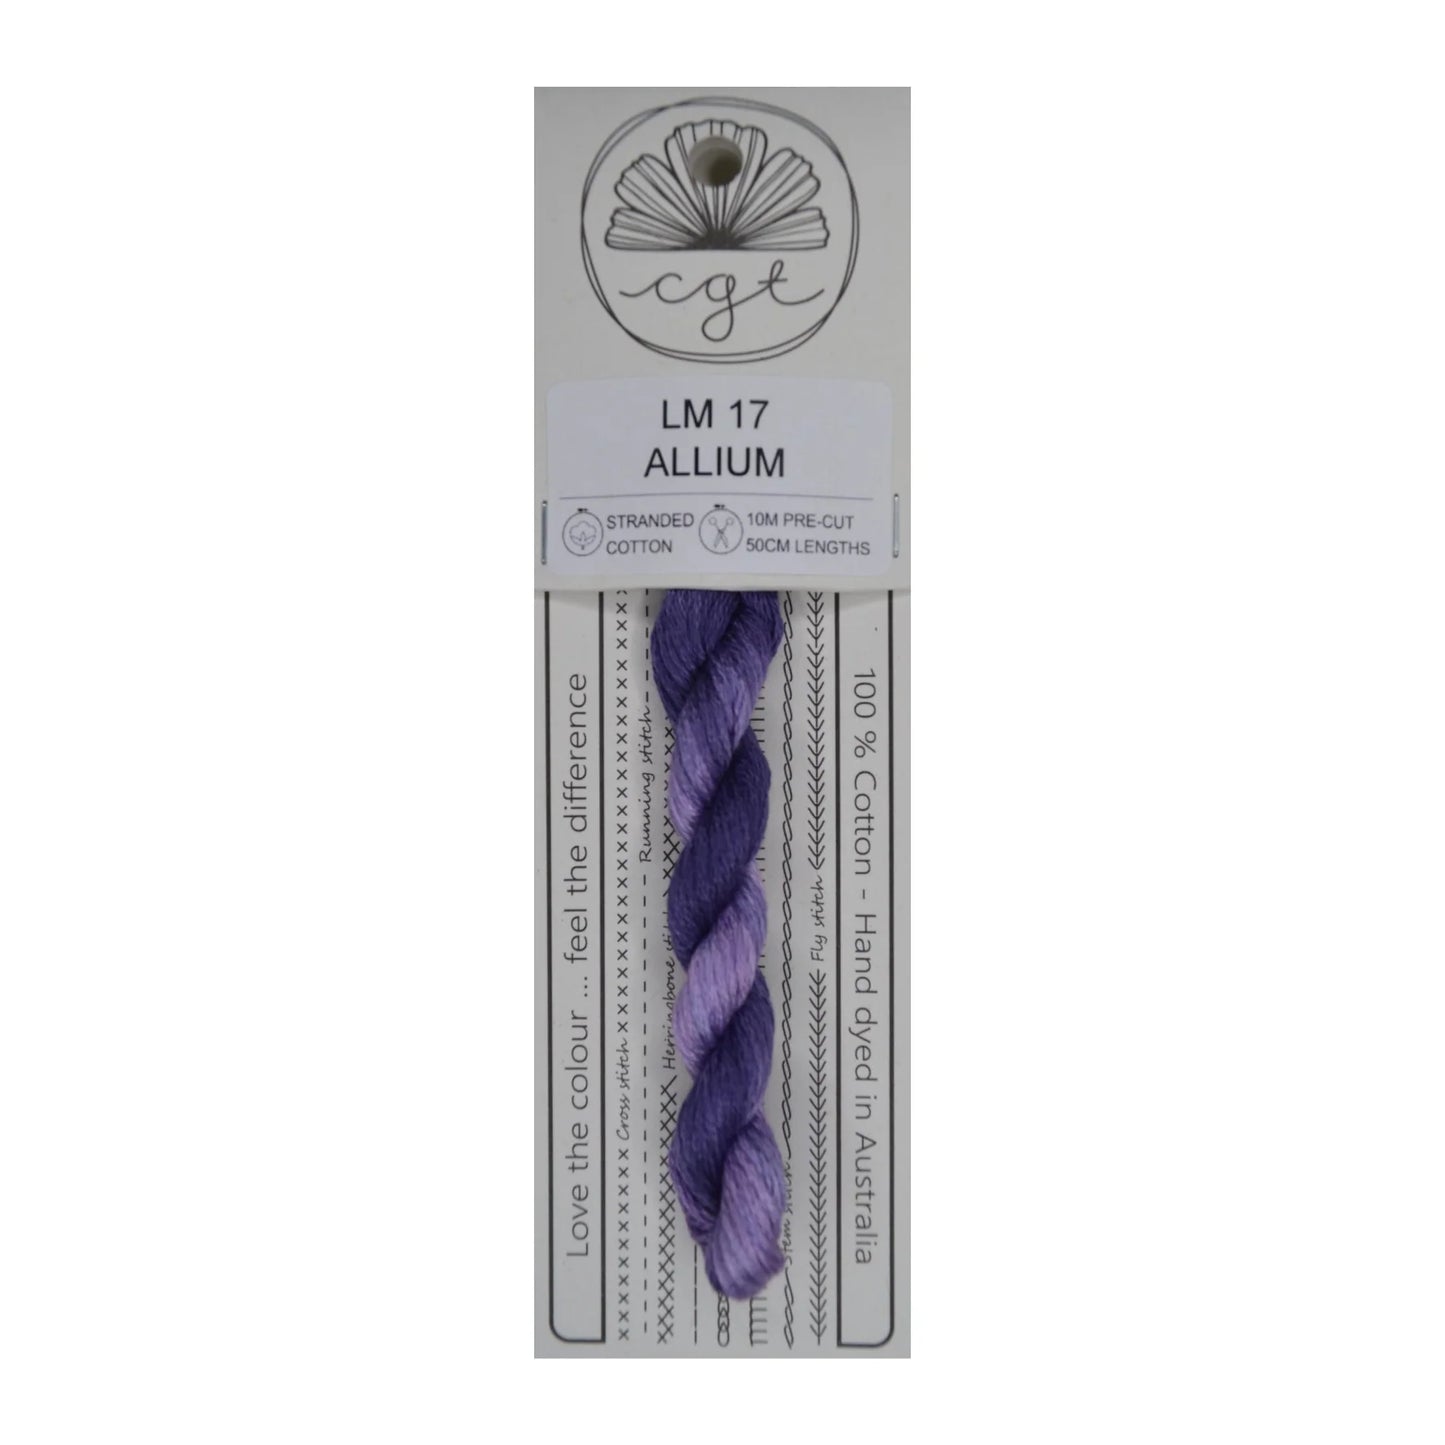 Allium LM 17 - Cottage Garden Threads, Thread & Floss, The Crafty Grimalkin - A Cross Stitch Store